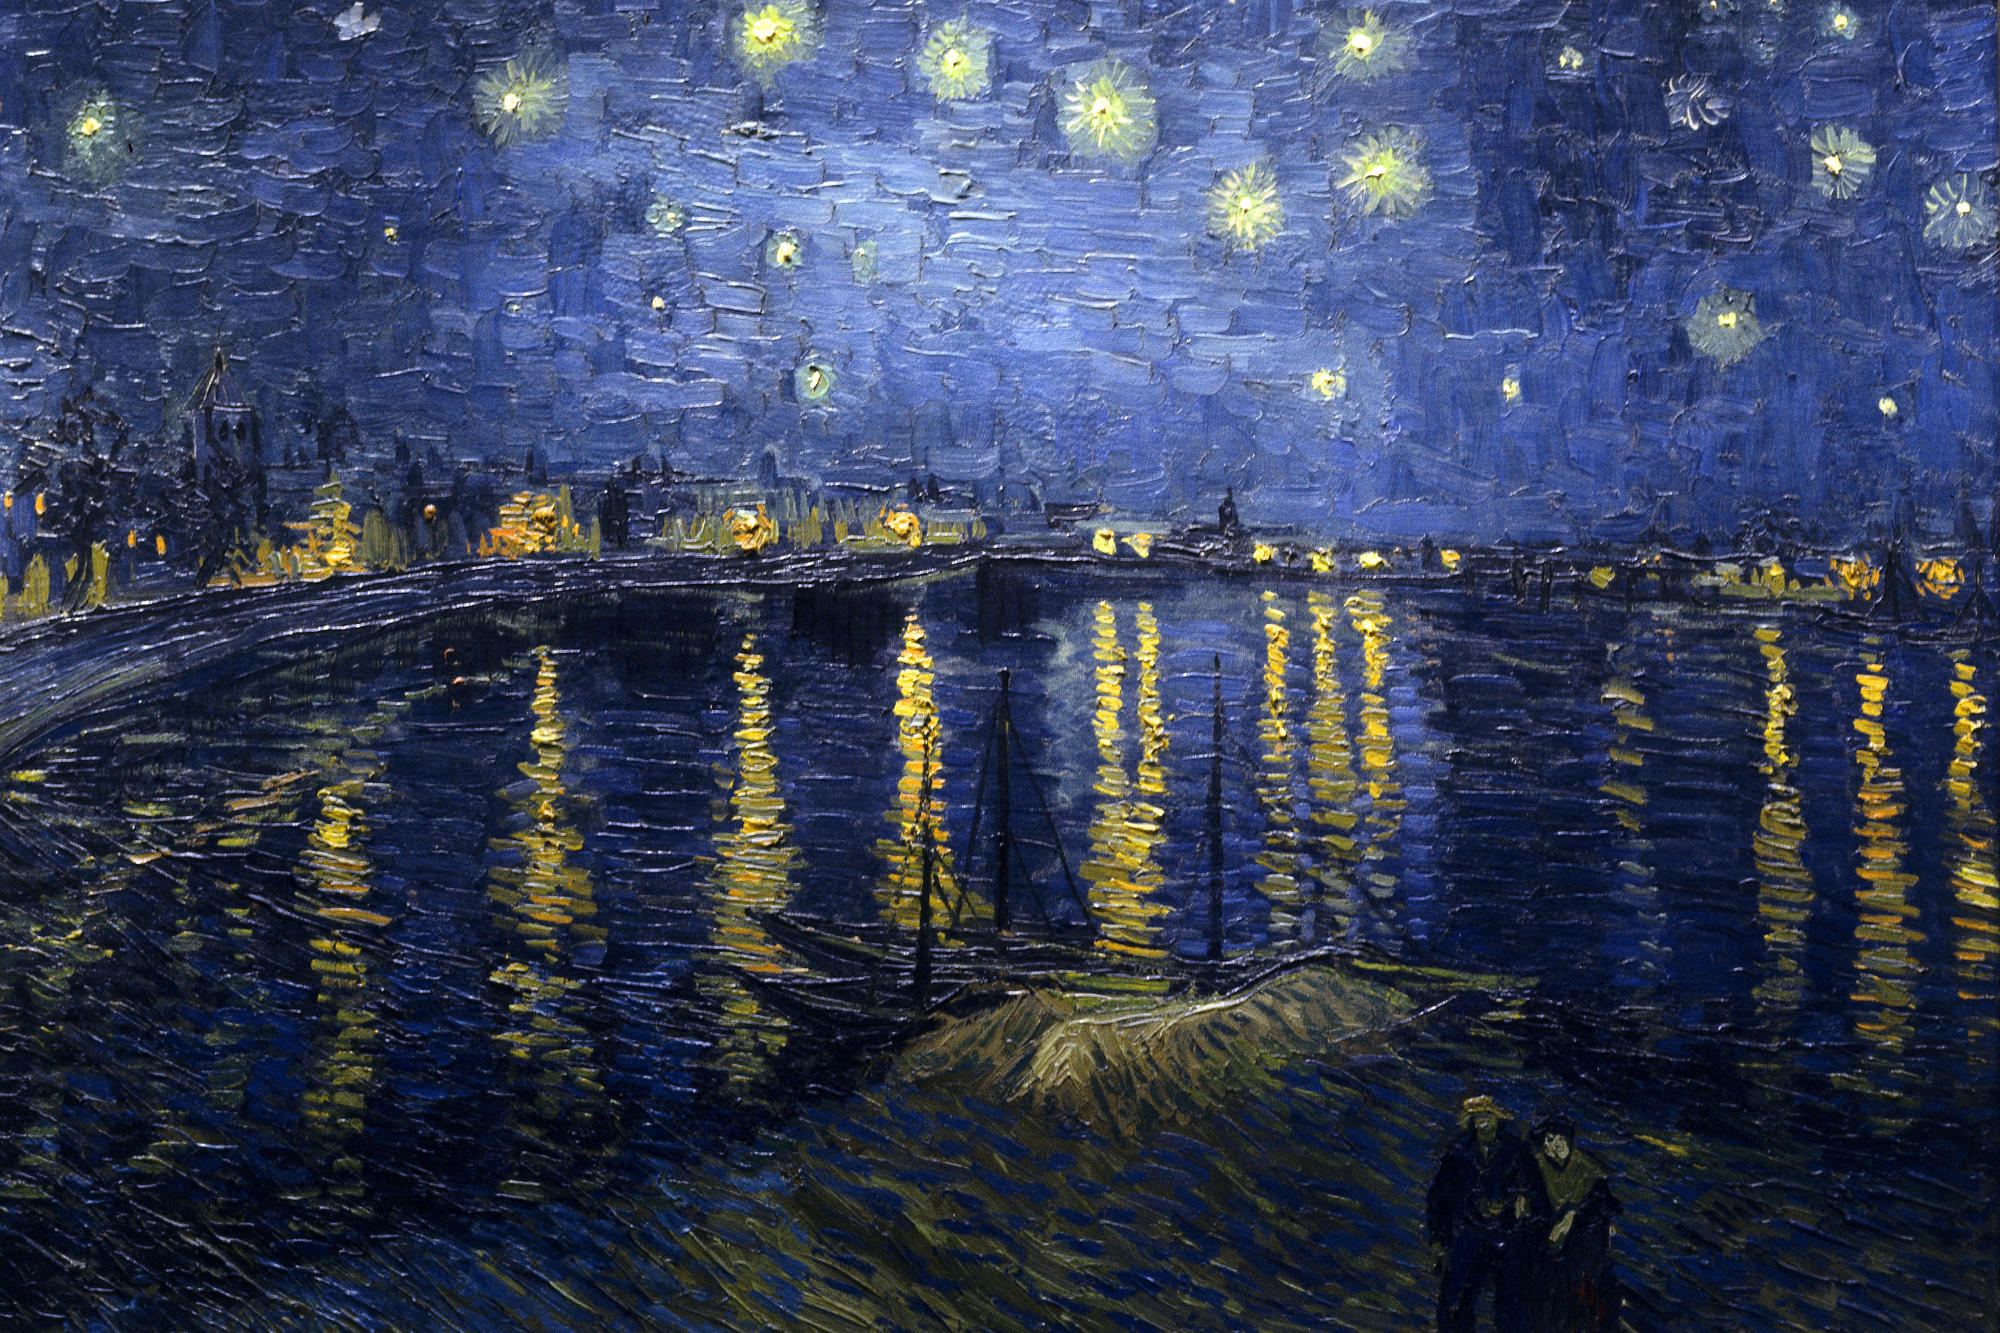 Звездная ночь над Роной. Ван Гог